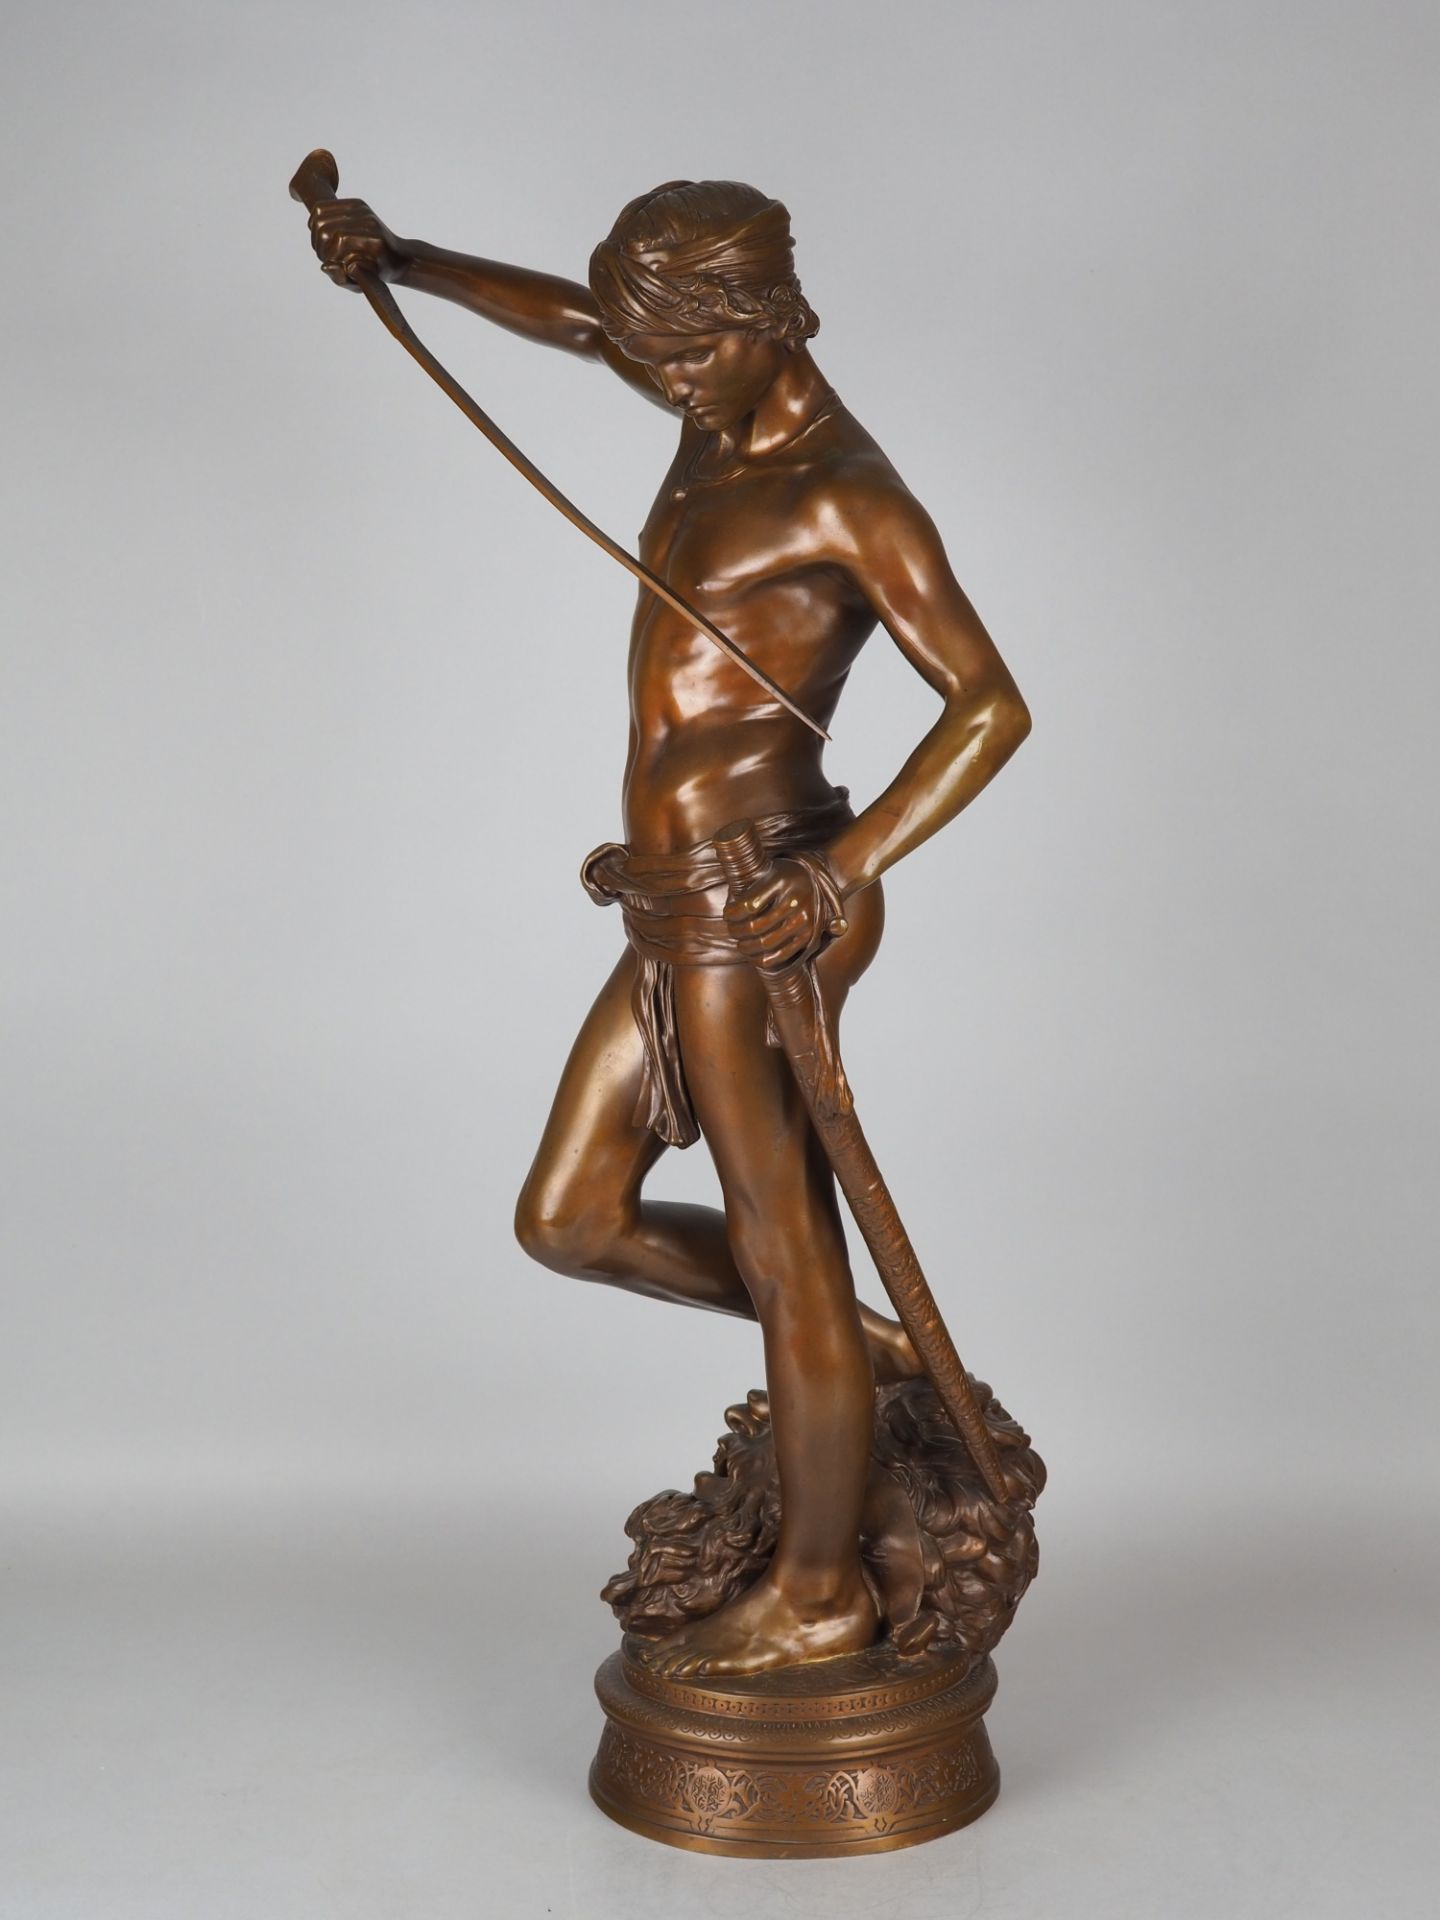 Repräsentative große Bronze "David Sieger" (über 72cm hoch!) von Antonin Mercié gegossen von F. Bar - Bild 2 aus 6